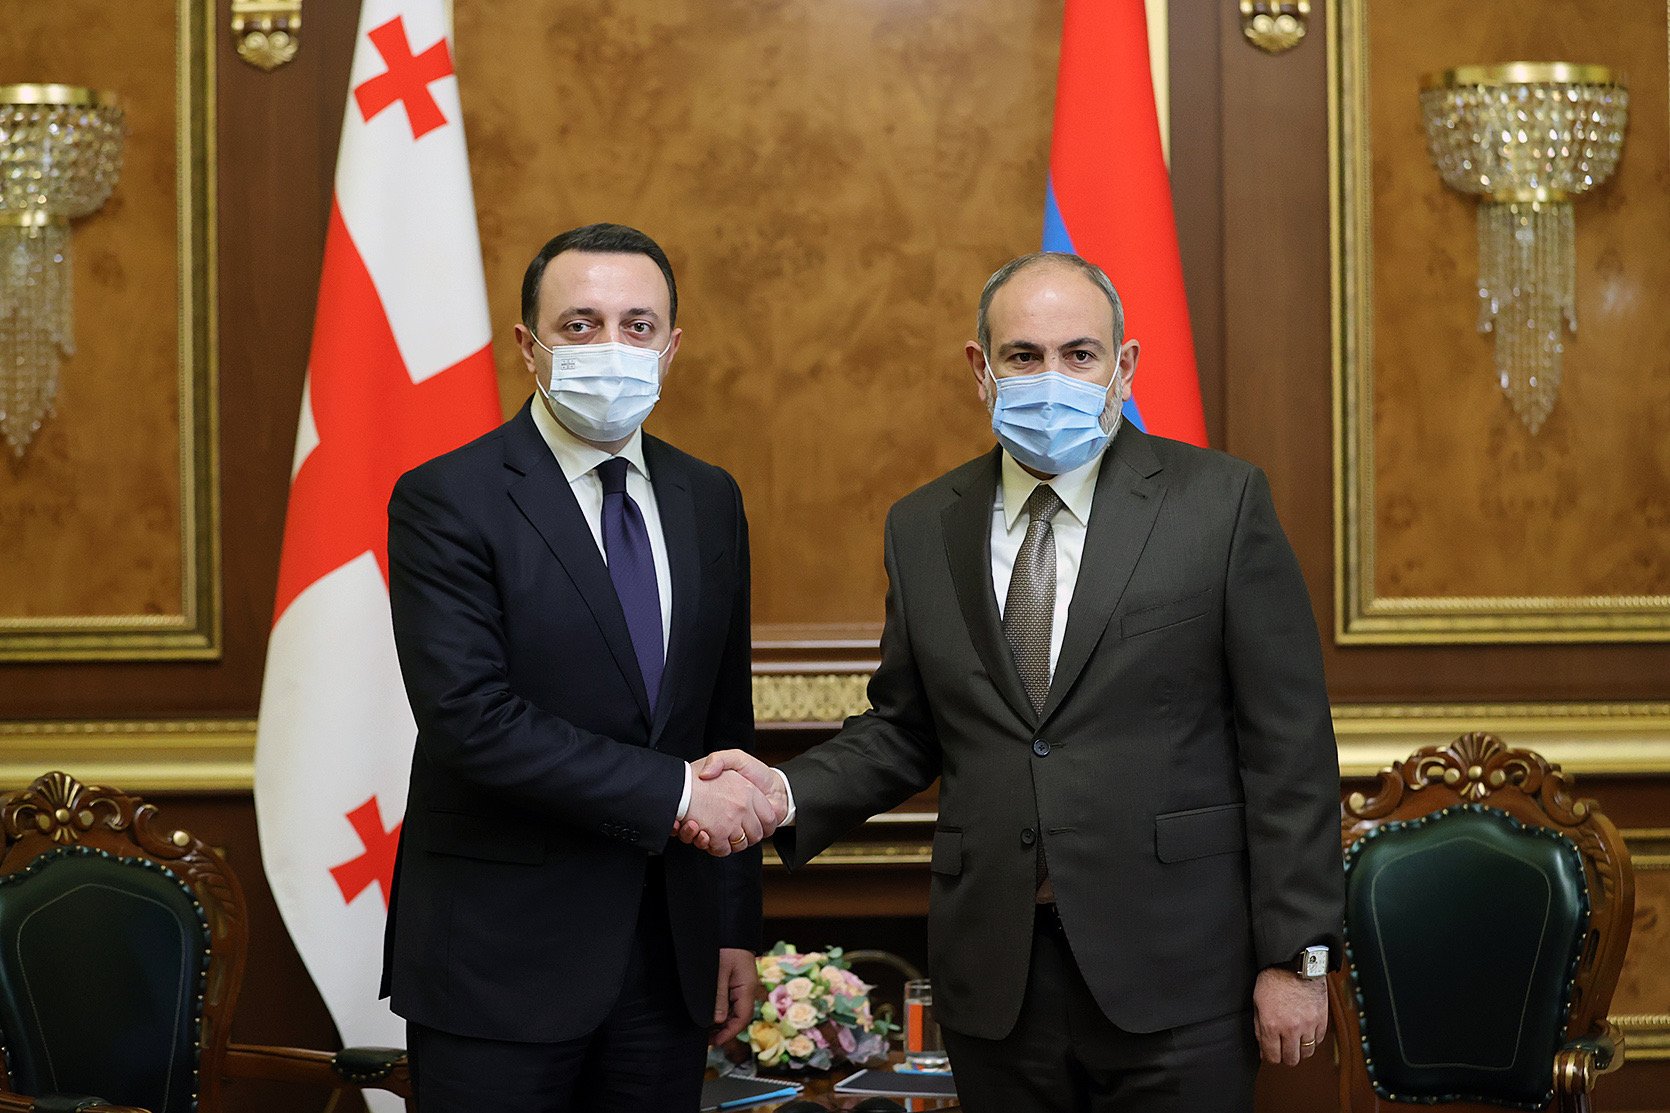 ՀՀ վարչապետը հանդիպում է ունեցել Վրաստանի վարչապետի հետ